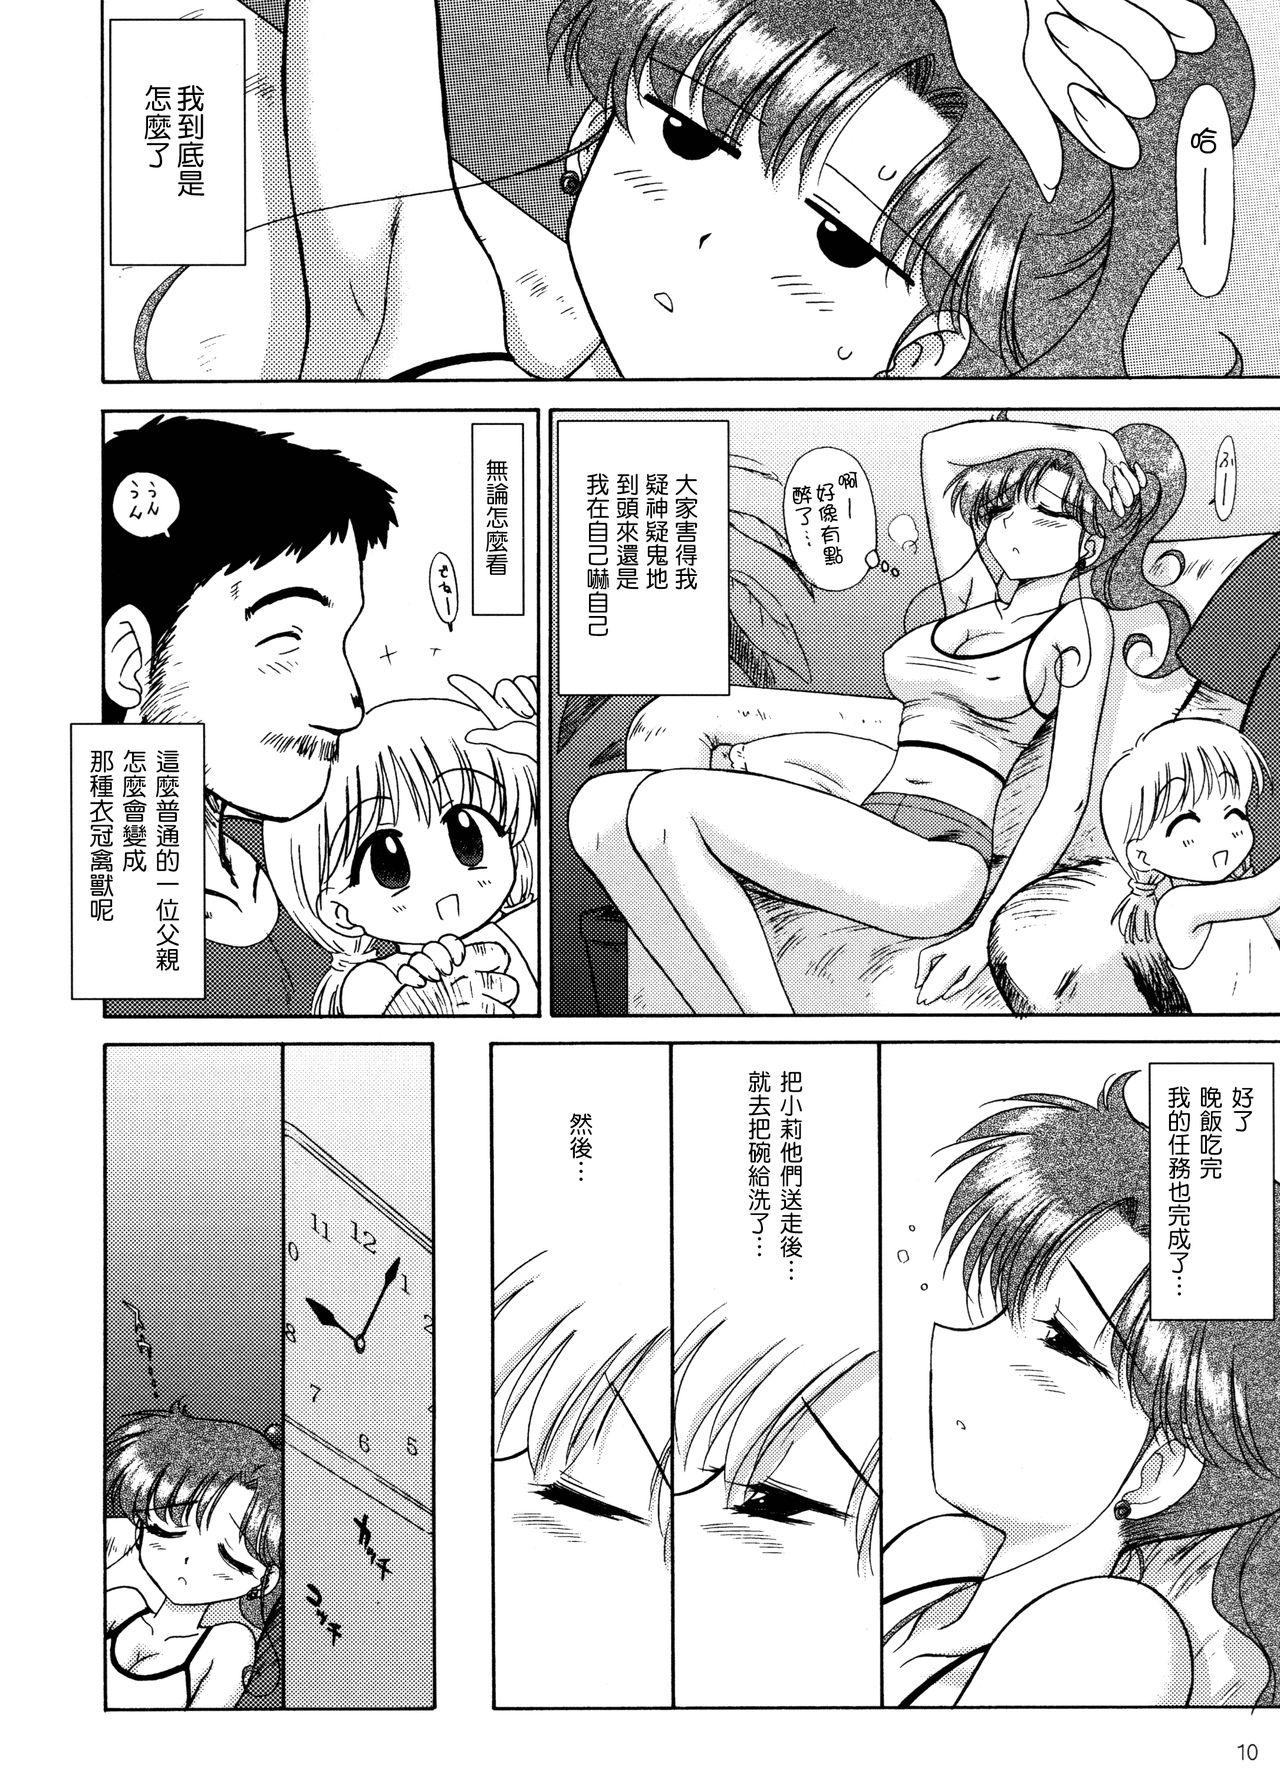 Chaturbate IN A SILENT WAY - Sailor moon | bishoujo senshi sailor moon Ftv Girls - Page 10